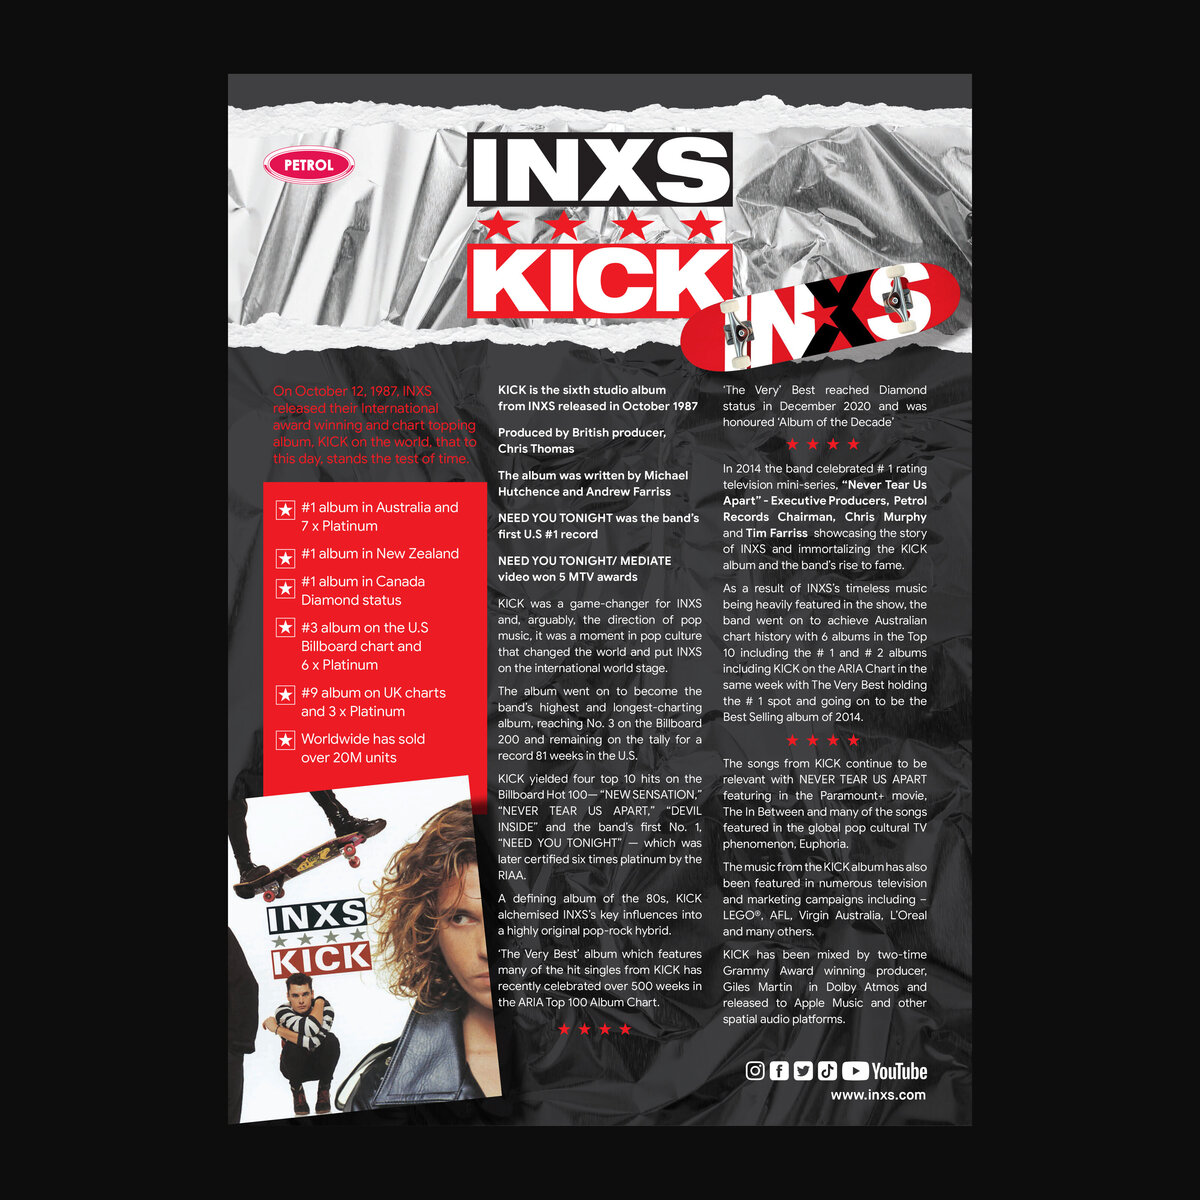 INXS (One Sheet)